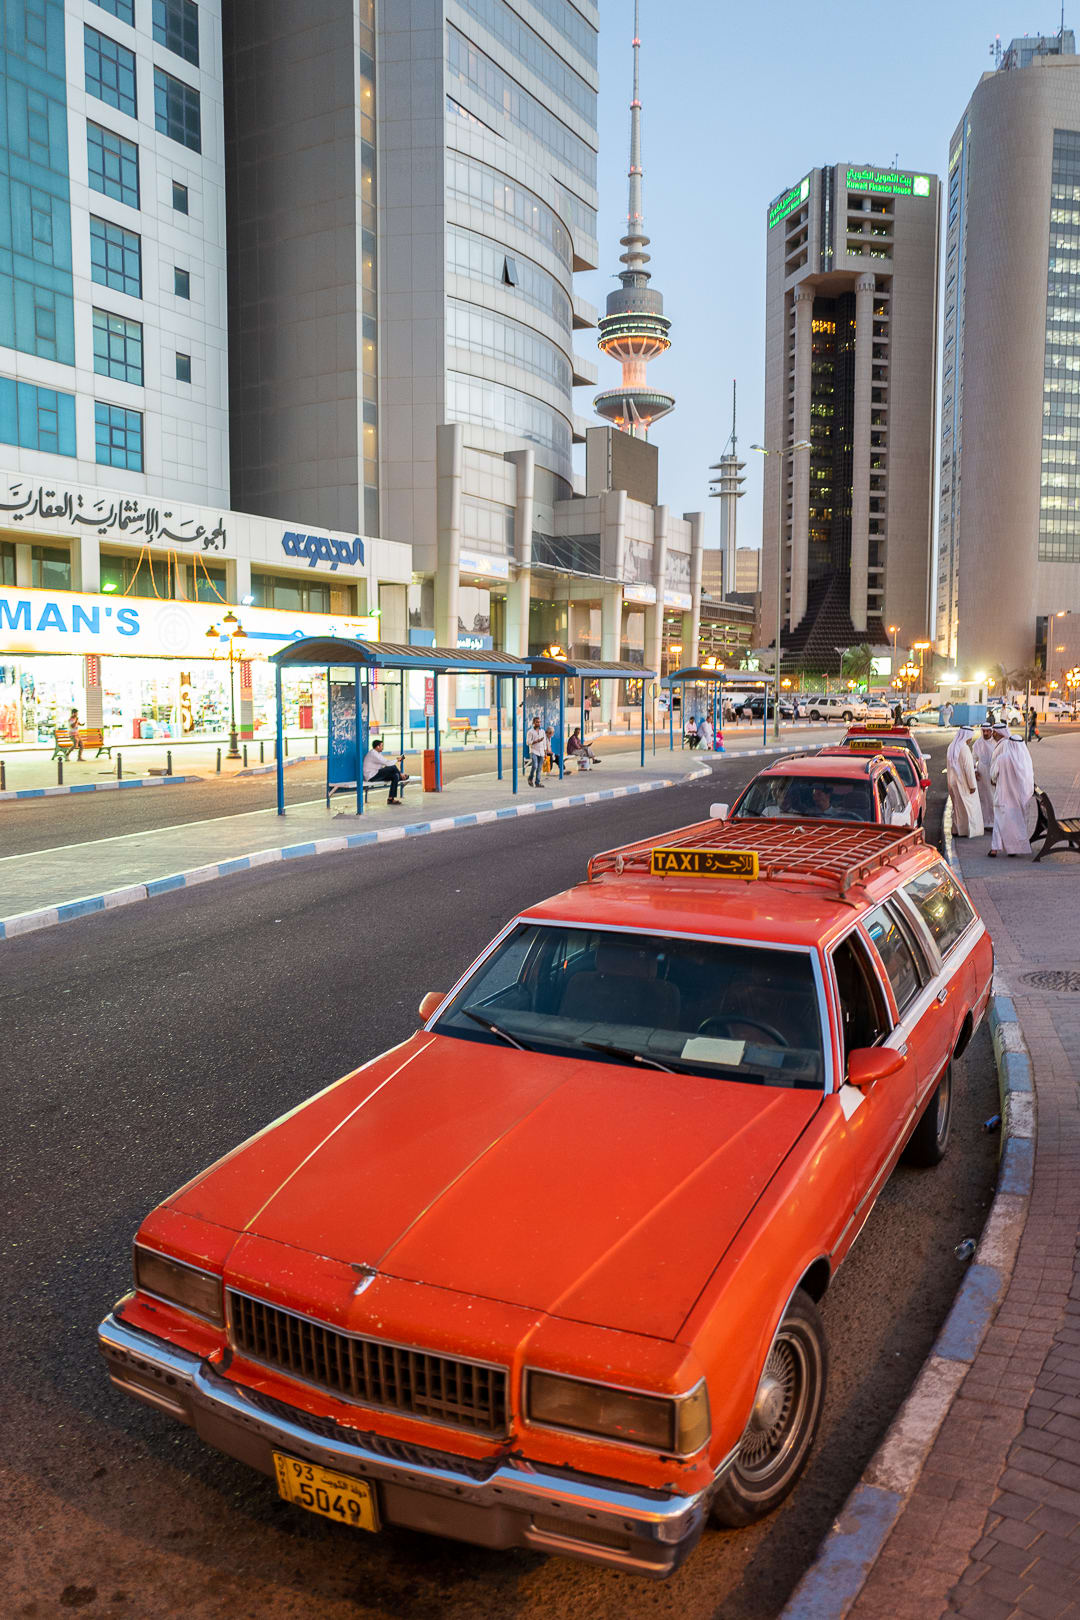 ما العنصر البرتقالي والأيقوني للكويت الذي قد لا تراه أجيال المستقبل؟